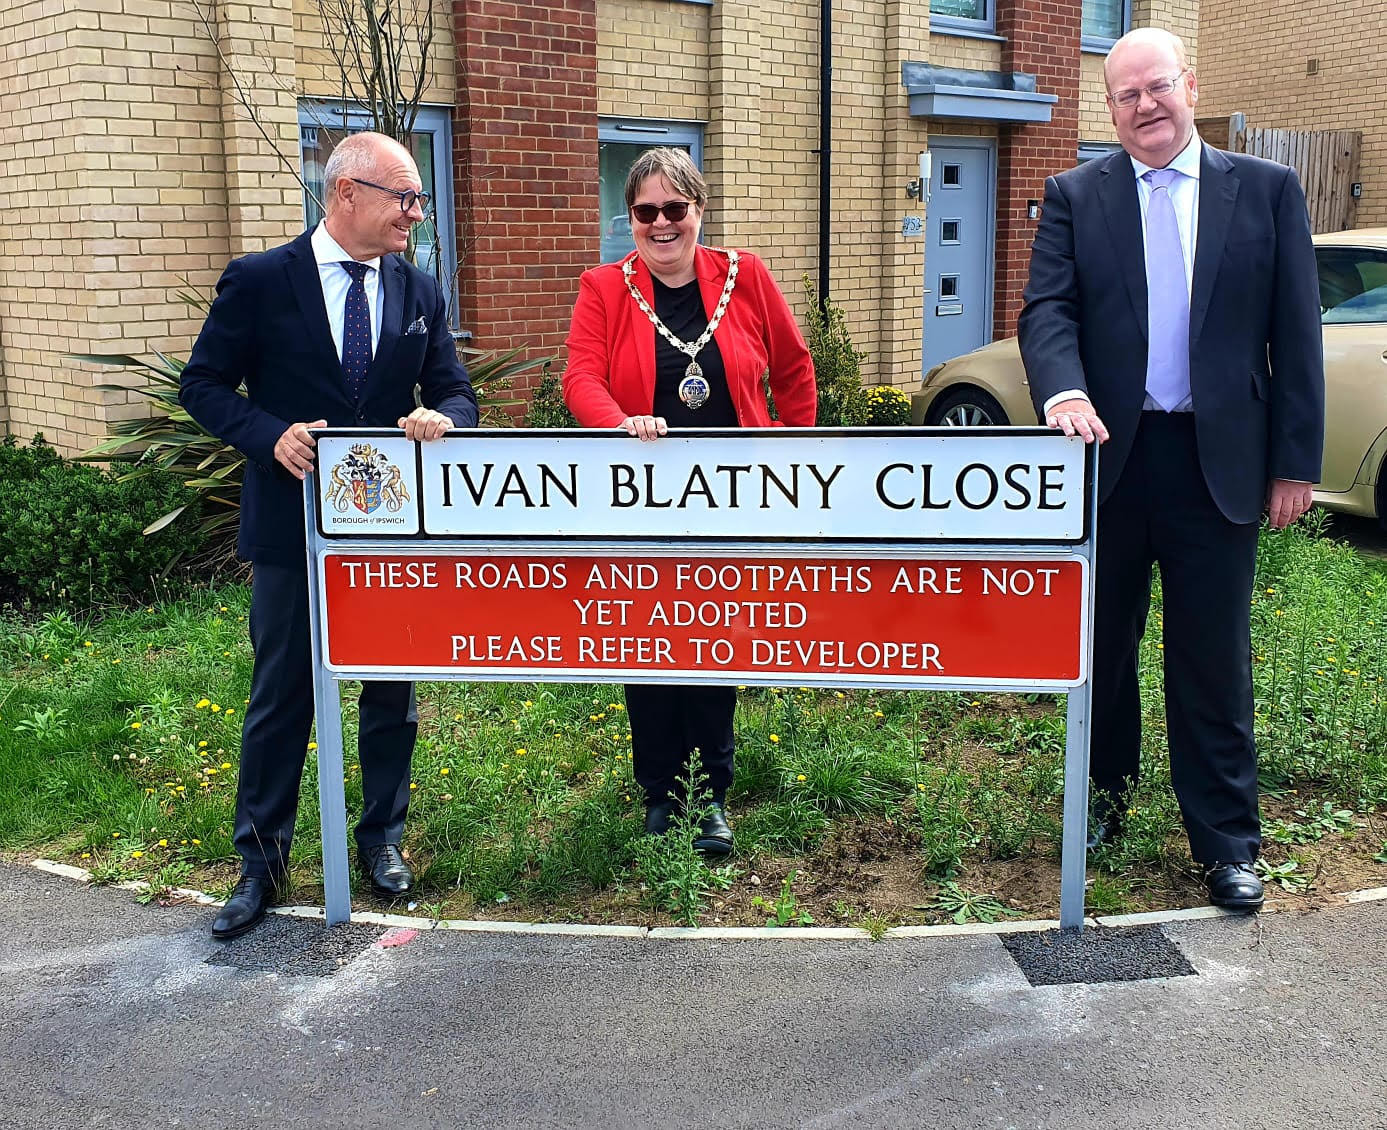 Proč pojmenoval britský Ipswich ulici po českém básníku Ivanu Blatném?